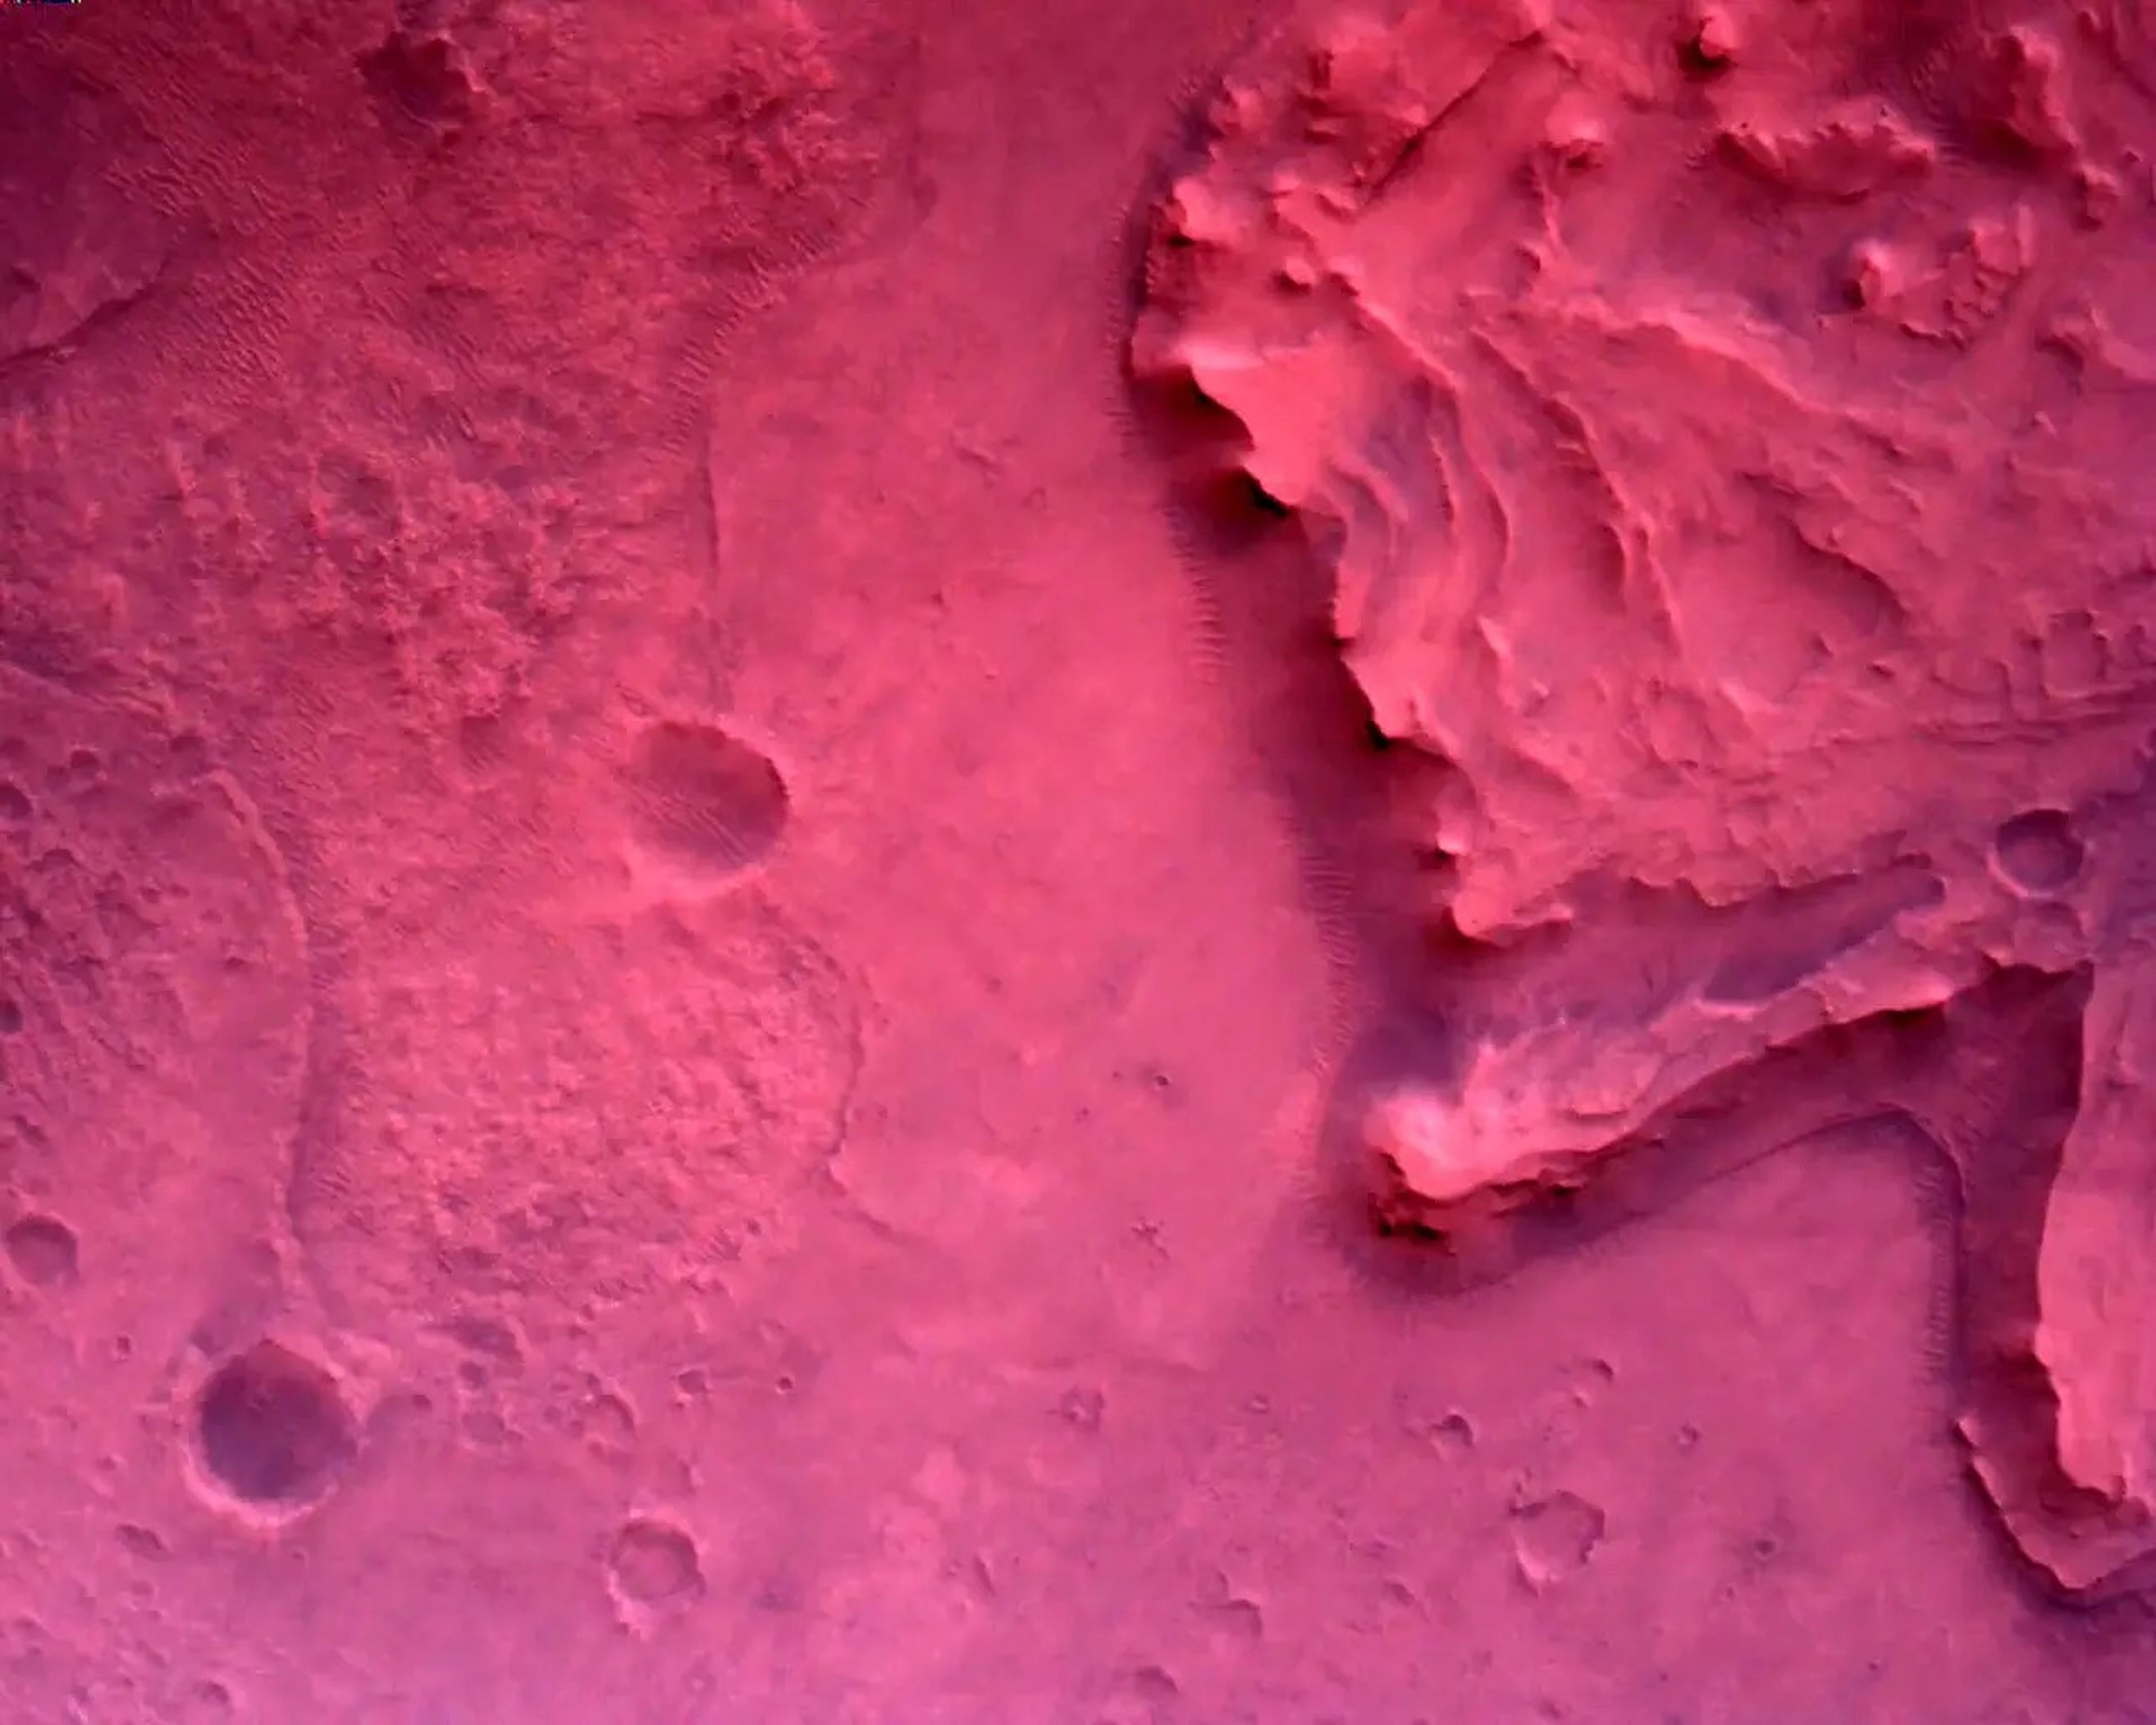 Una cámara en la parte inferior del rover Mars Perseverance de la NASA adquirió esta imagen durante el descenso el 18 de febrero de 2021. No se ha corregido el color.